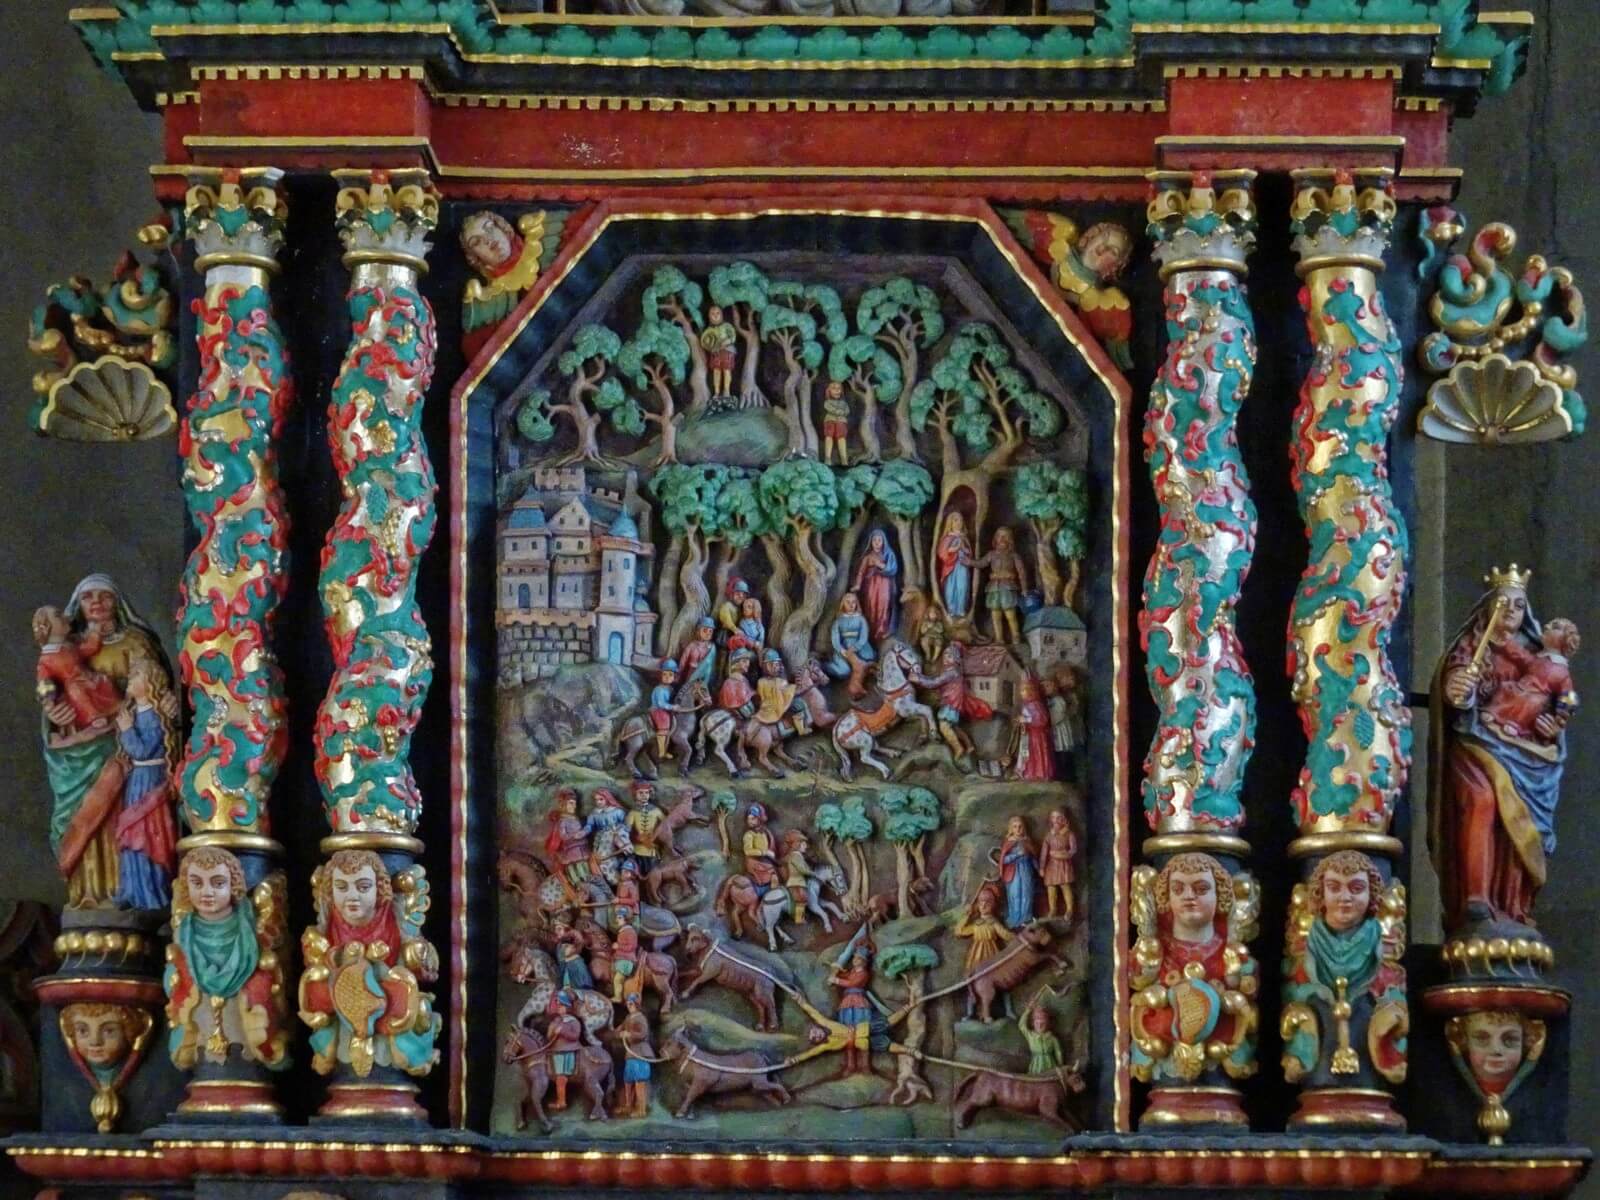 Das plastische Altarbild von 1667 erzhlt die Genoveva-Sage sehr drastisch - Lupe Reisen